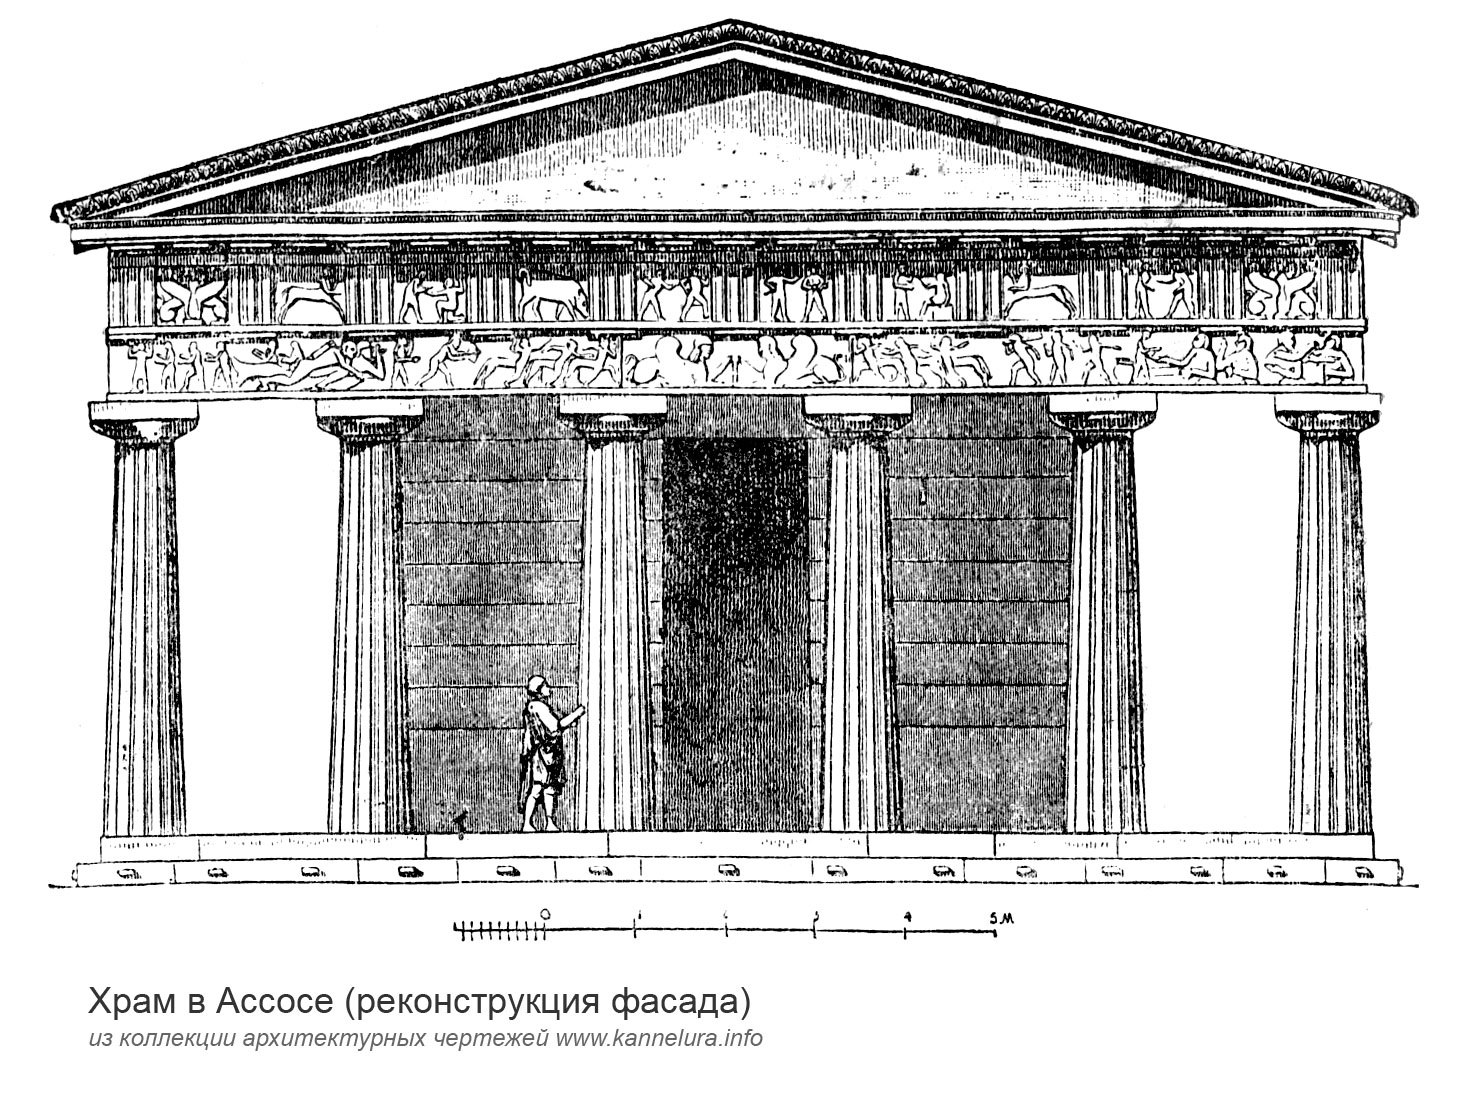 Древний храм Гефеста в Афинах